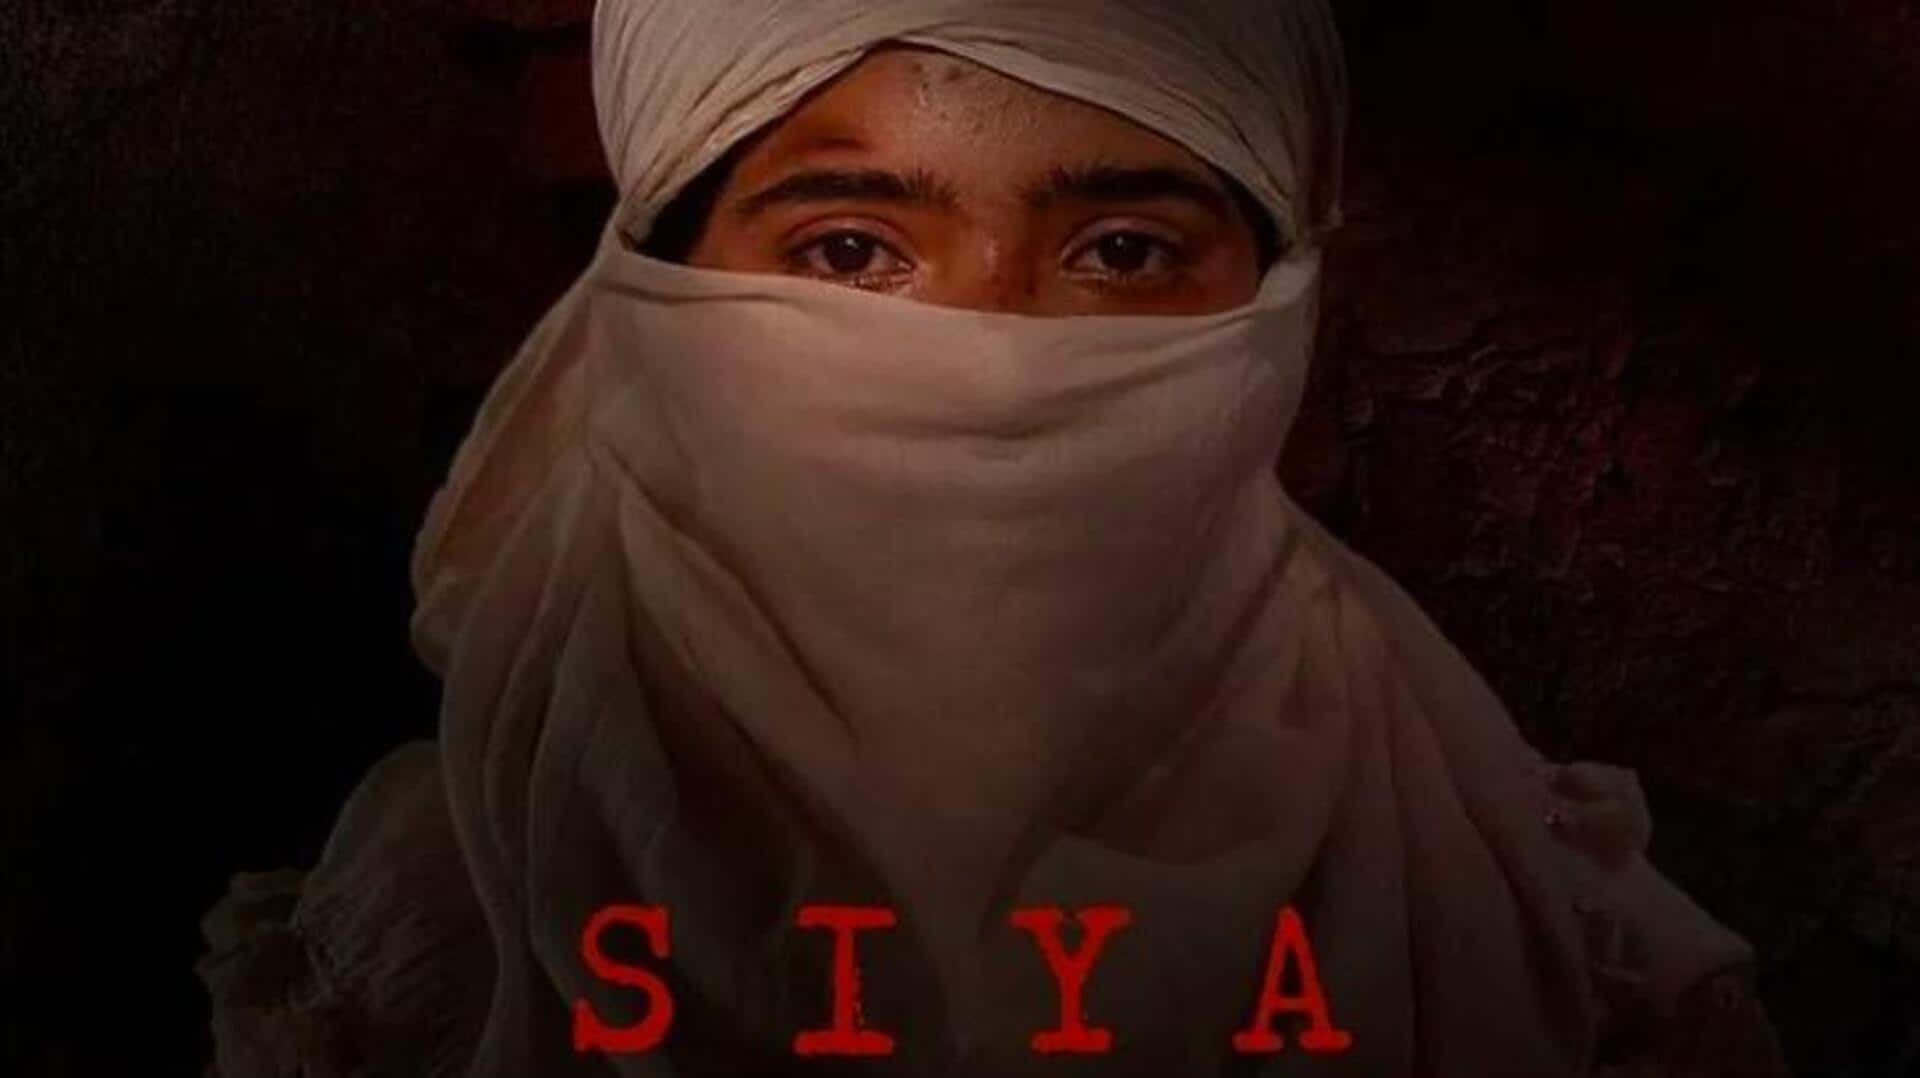 फिल्म 'सिया' का ट्रेलर रिलीज, जानिए कब और कहां रिलीज होगी 